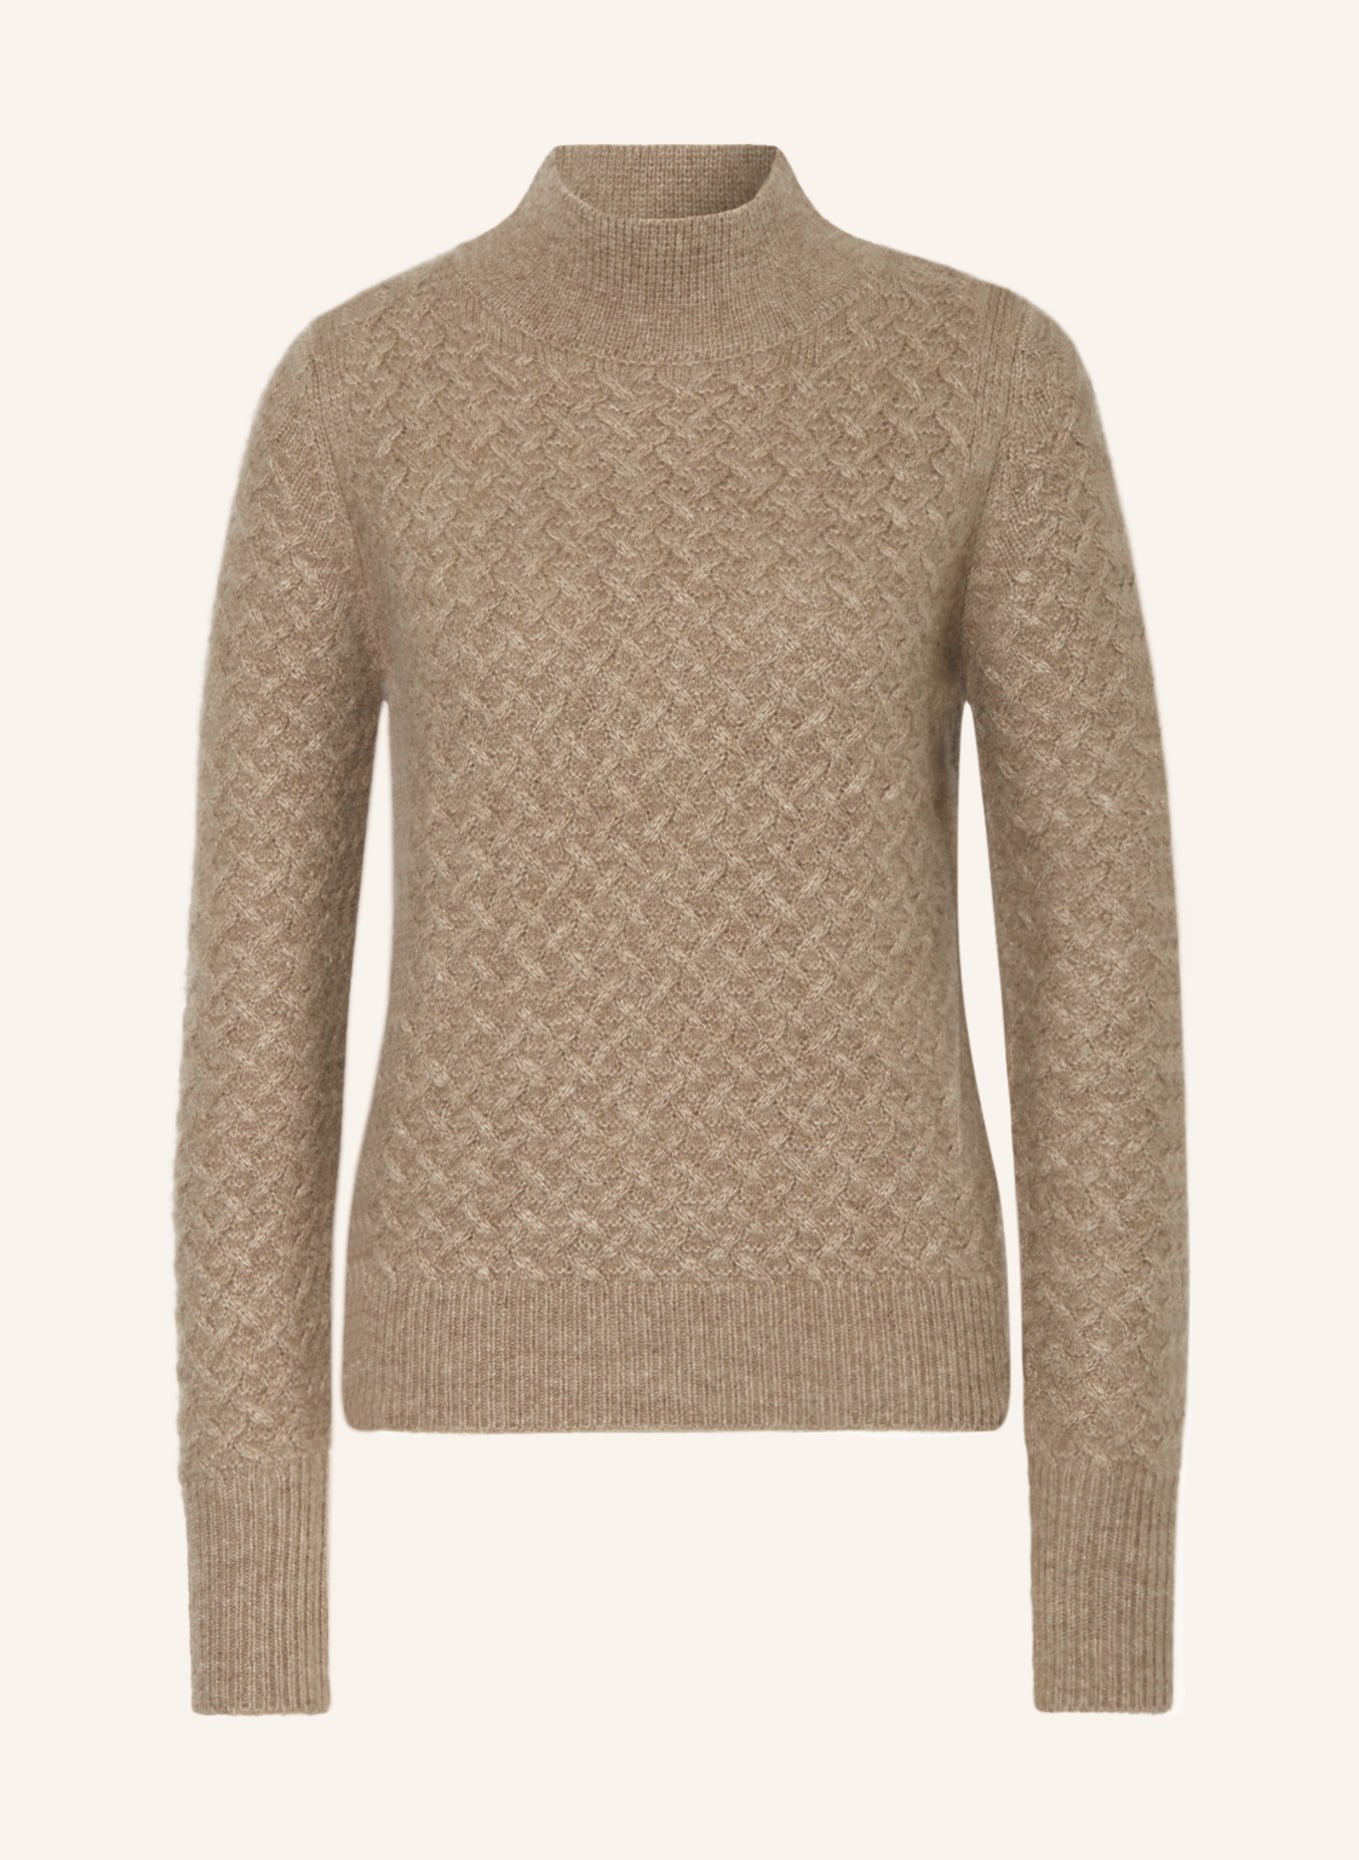 IRIS von ARNIM Cashmere sweater, Color: BEIGE (Image 1)